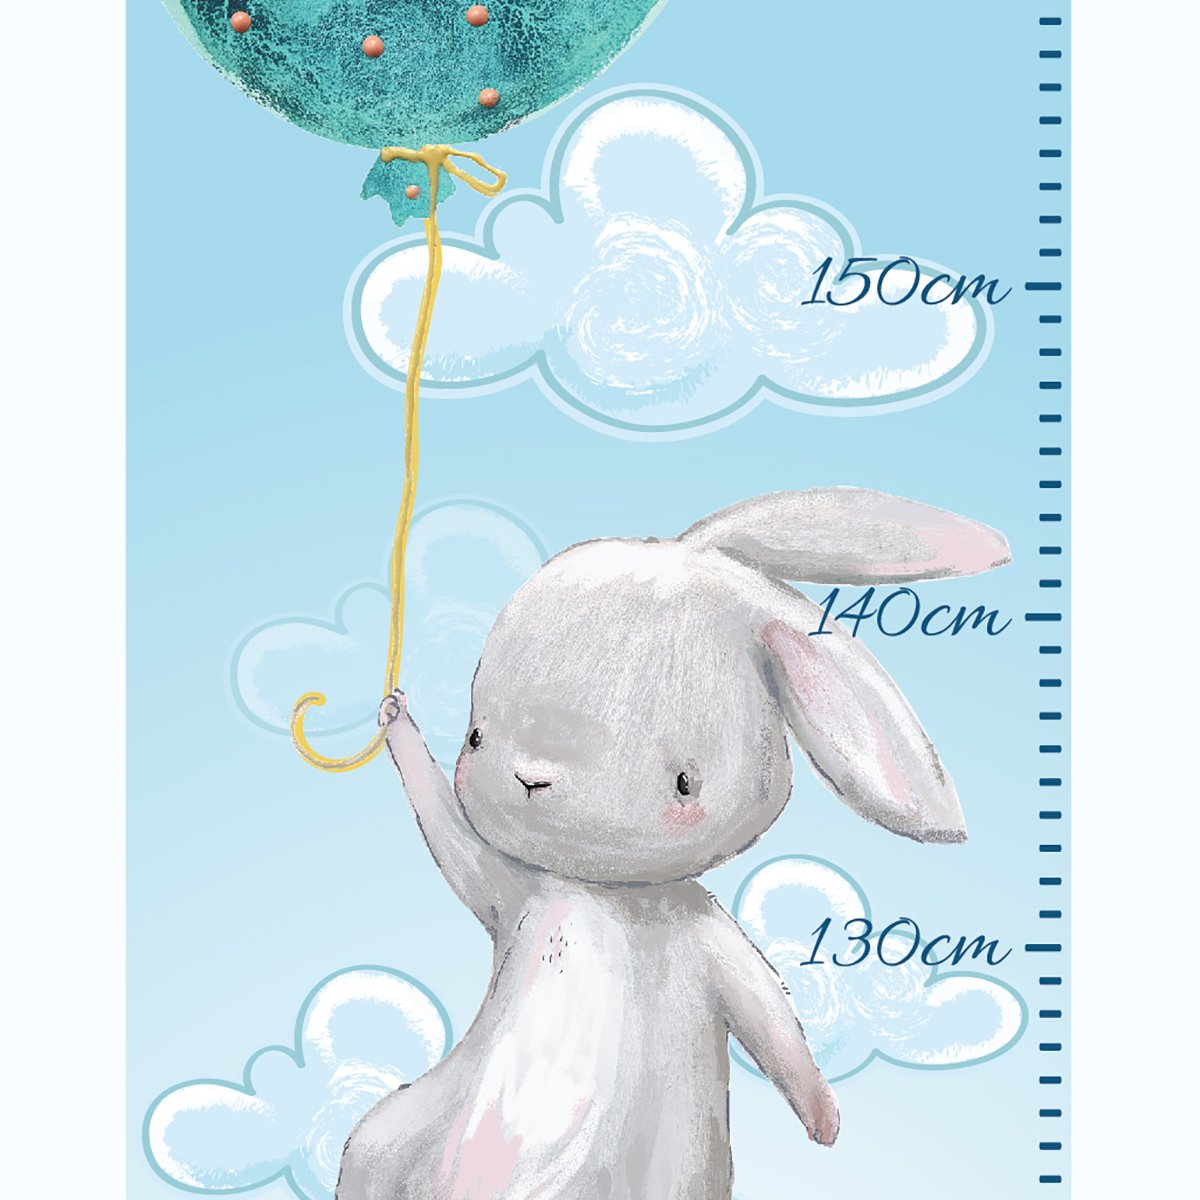 Naklejka miarka wzrostu - balony i latające króliki#kolor_mietowy